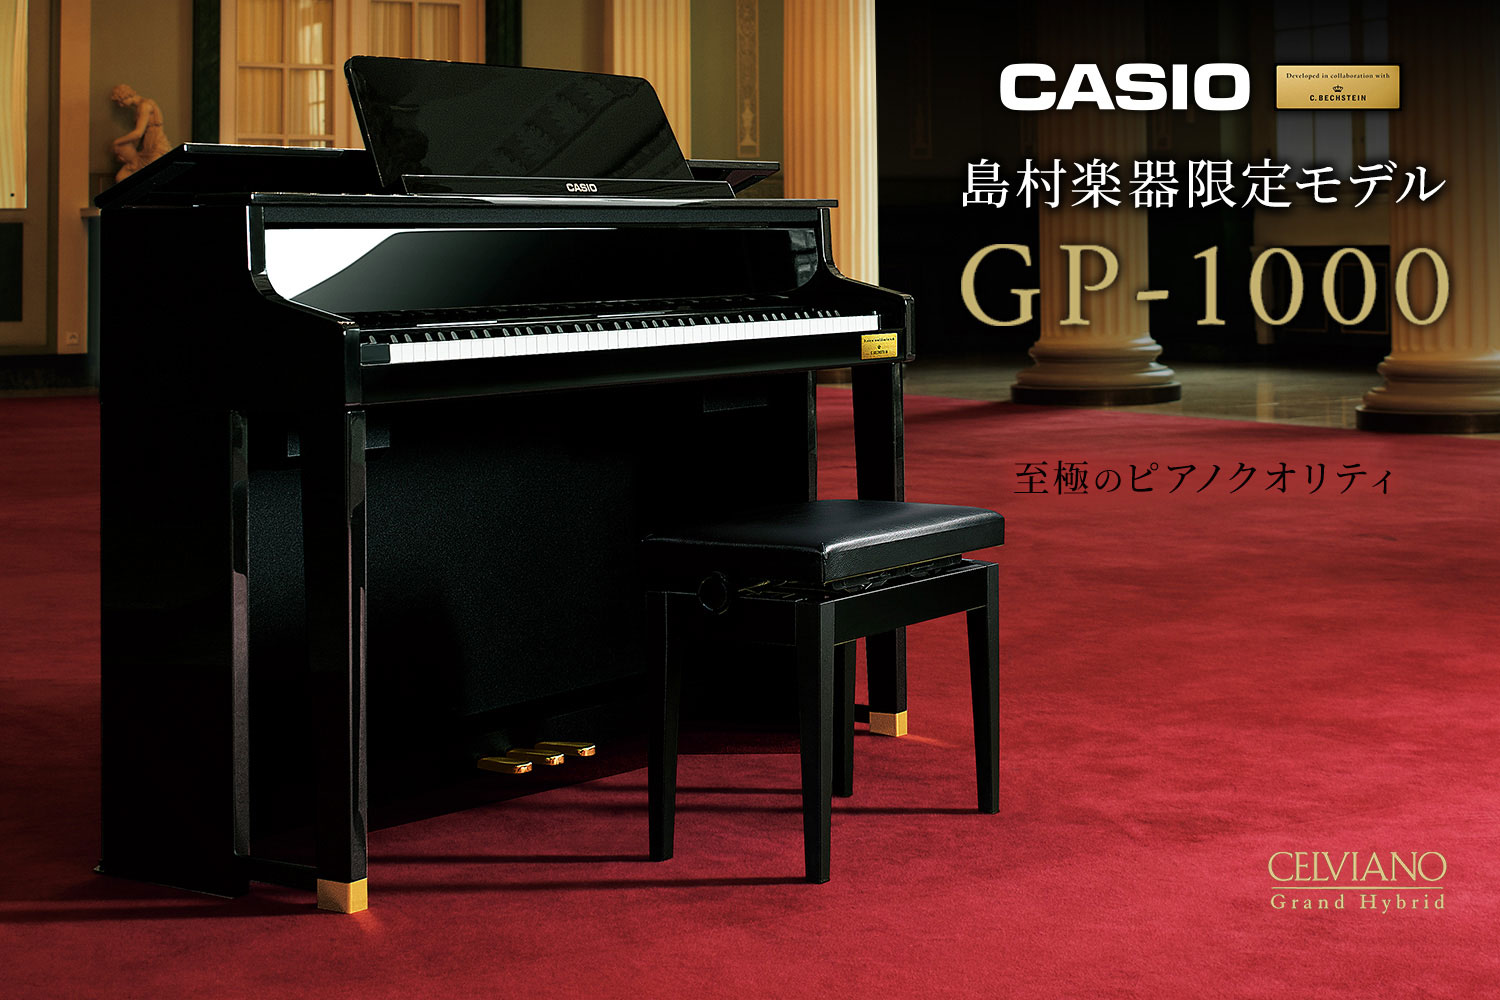 CASIO×島村楽器コラボレーションモデル【GP-1000】を使用したピアノコンサートを開催いたします。グランドピアノの演奏性にとことんこだわり、“電子ピアノ？！”と思う程の高いクオリティのモデルを、当店ピアノ講師が演奏いたします。ピアノにご興味のある方、気軽にコンサートを楽しみたい方、電子ピアノの […]